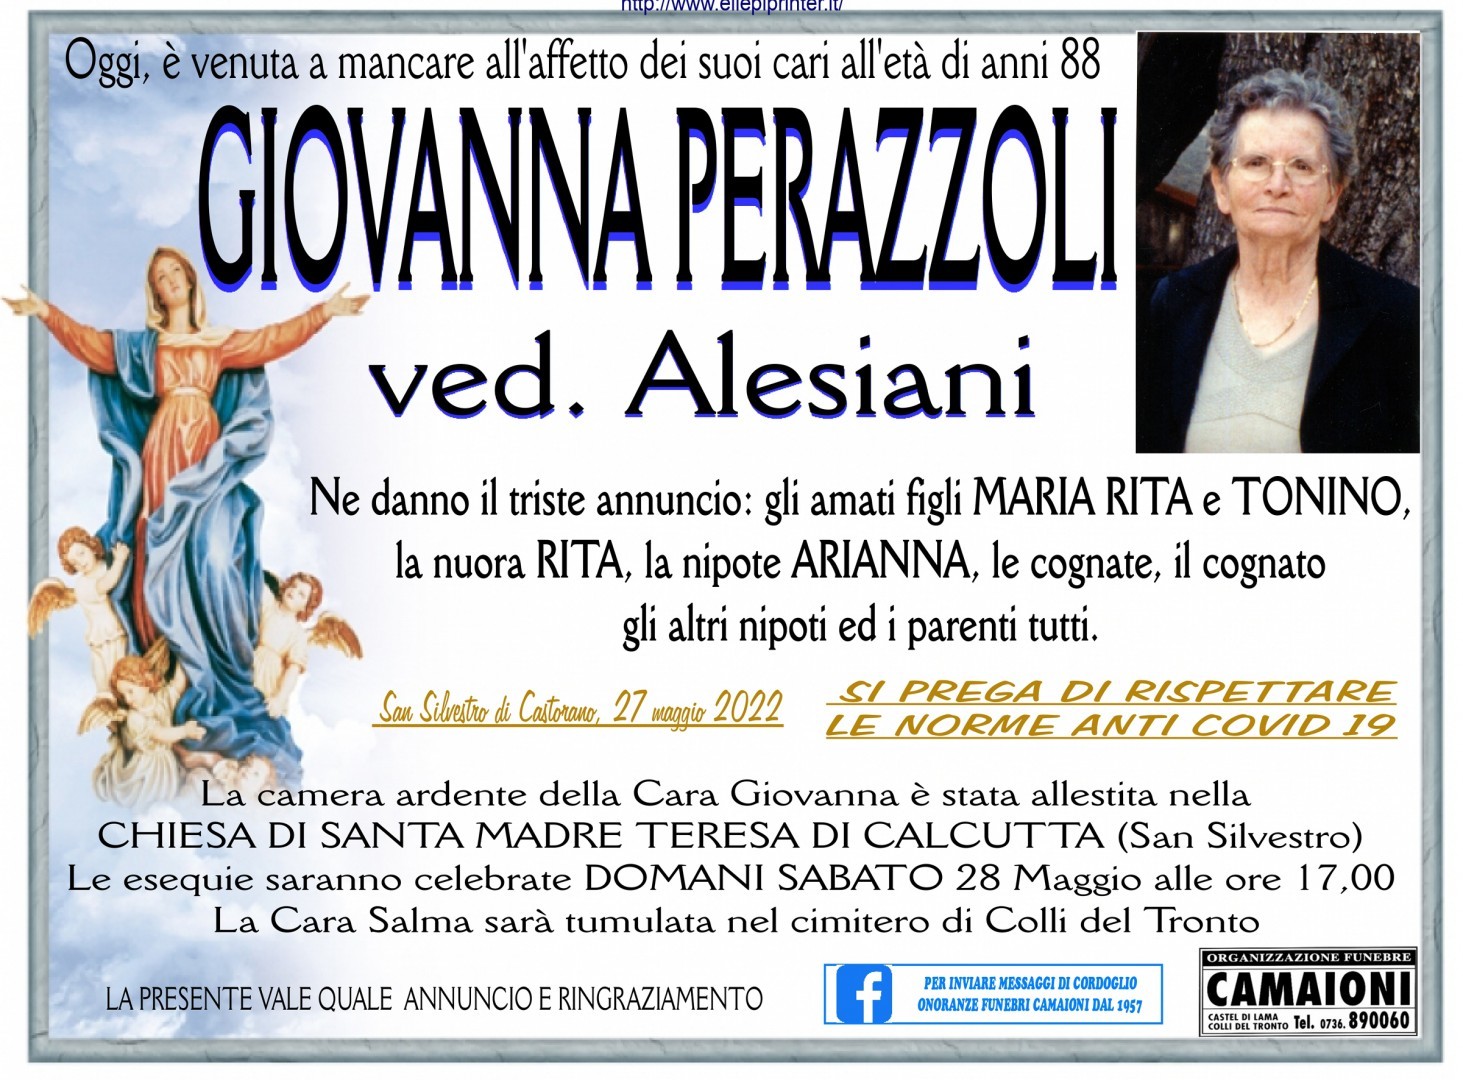 Giovanna Perazzoli Ved. Alesiani